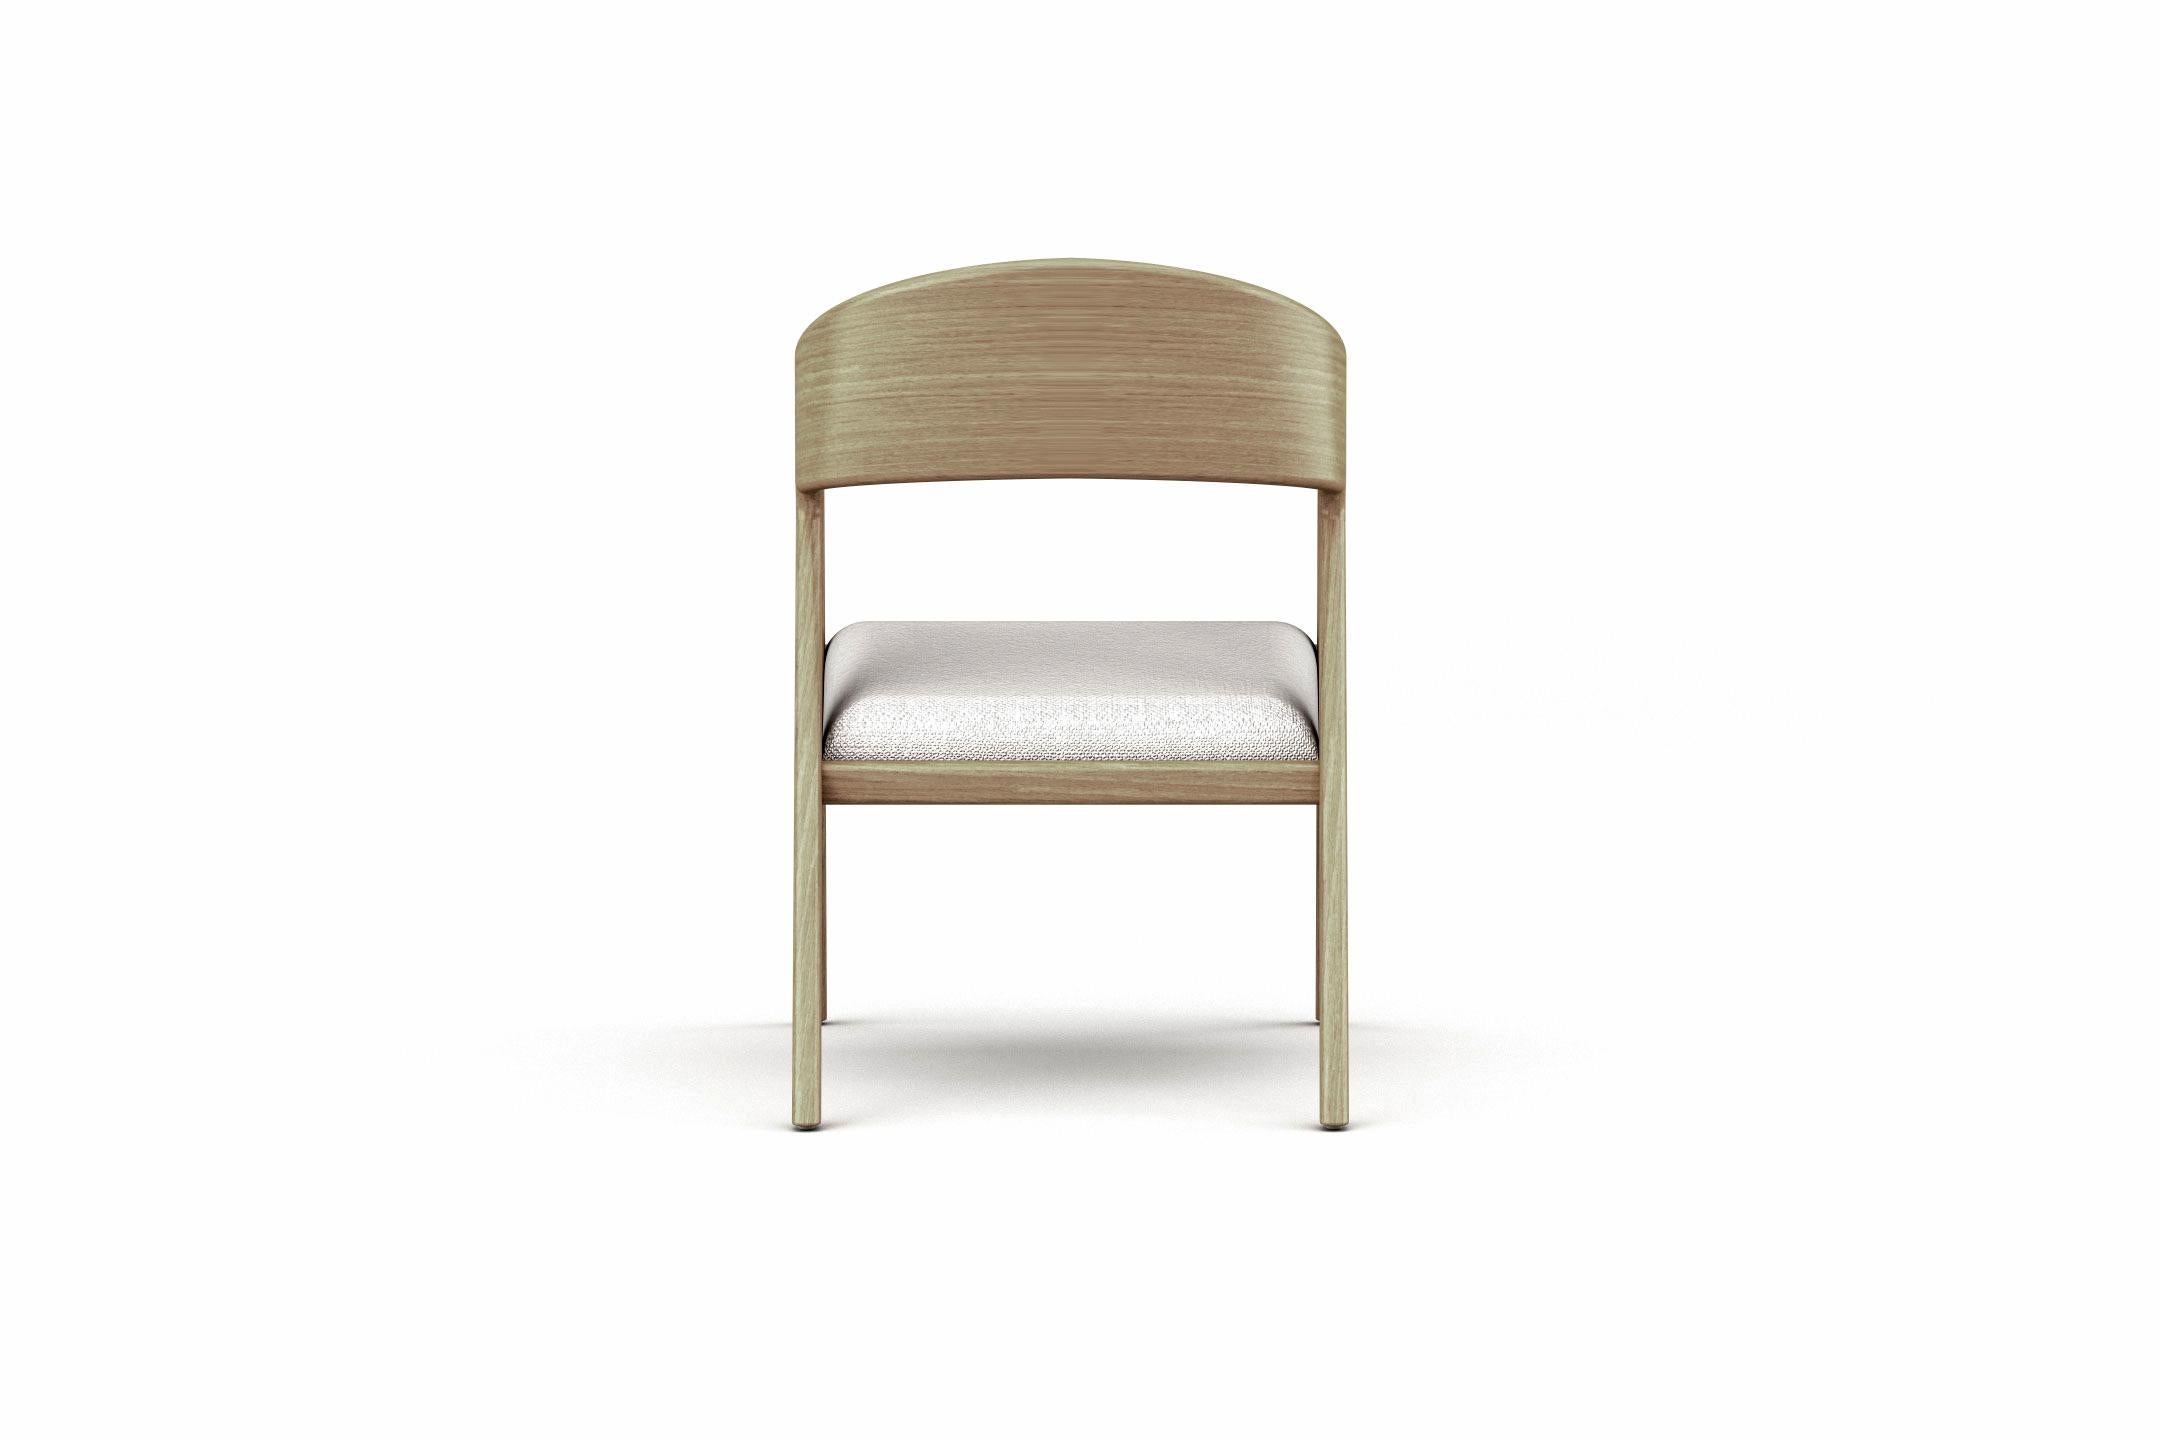 Verni 8 fauteuils Vertex, fauteuil moderne et minimaliste en chêne avec assise tapissée en vente